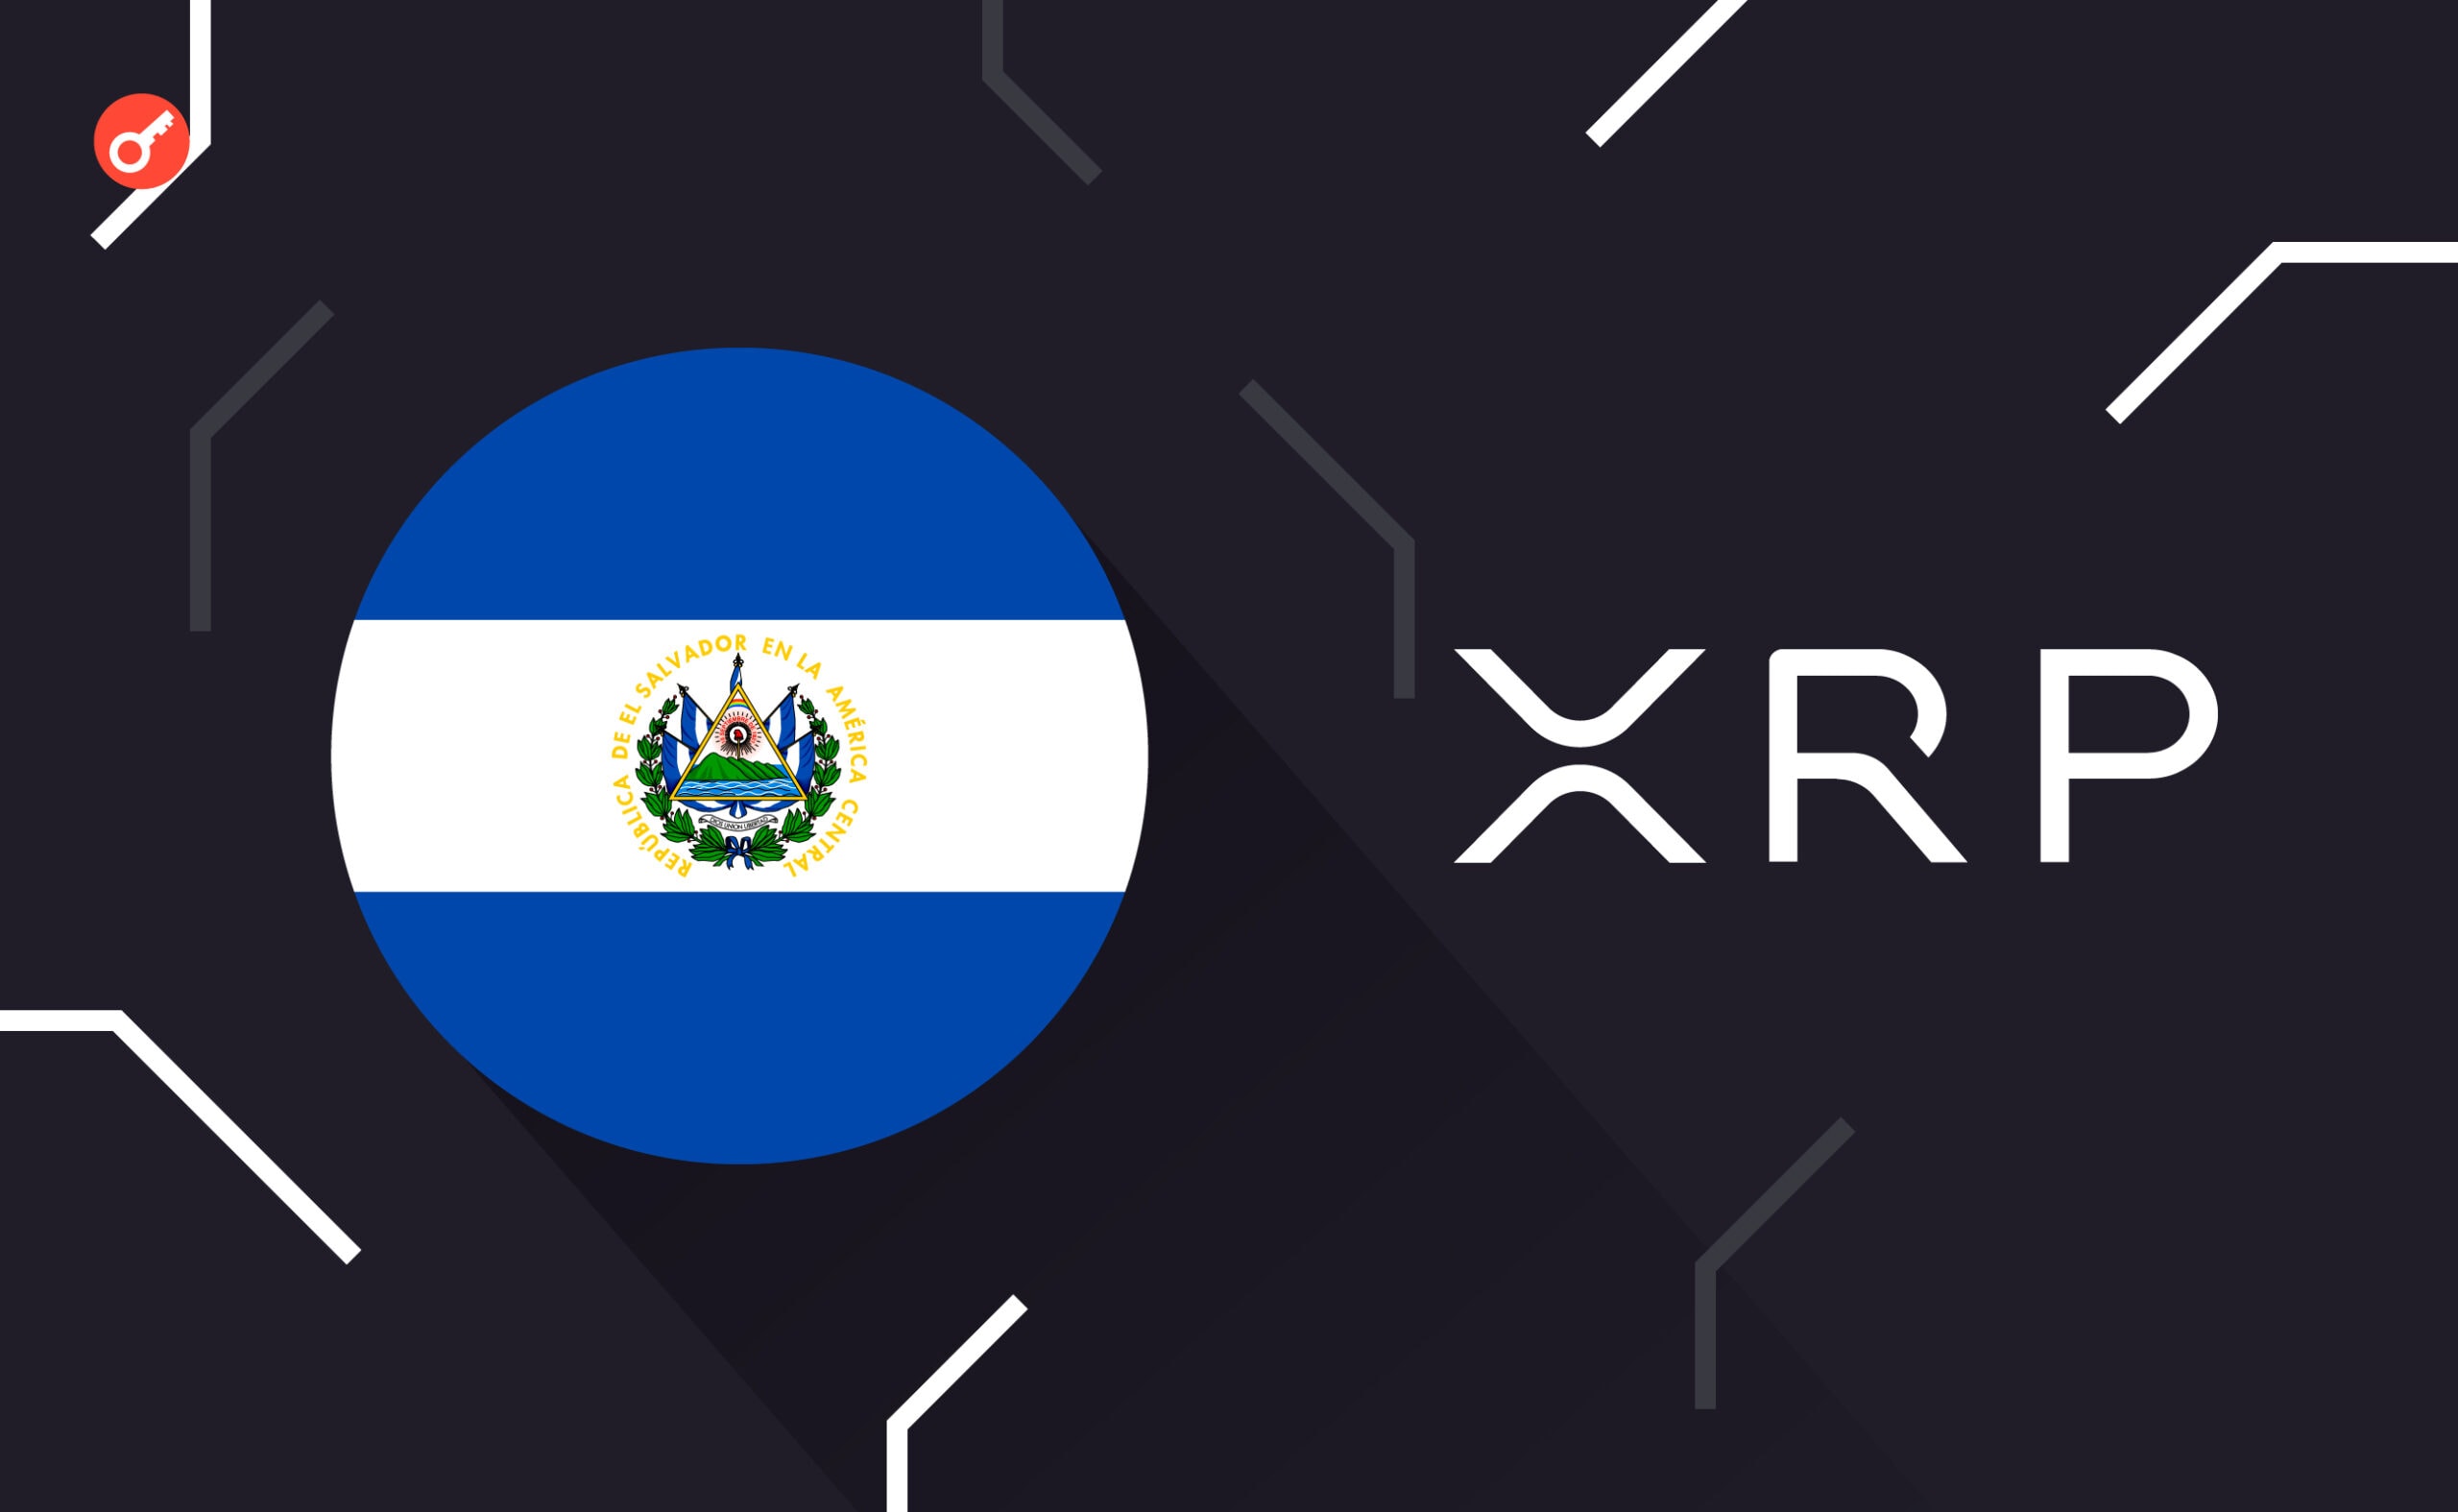 Бывший топ-менеджер Ripple советует Сальвадору перейти на XRP из-за высоких комиссий в сети Bitcoin. Заглавный коллаж новости.